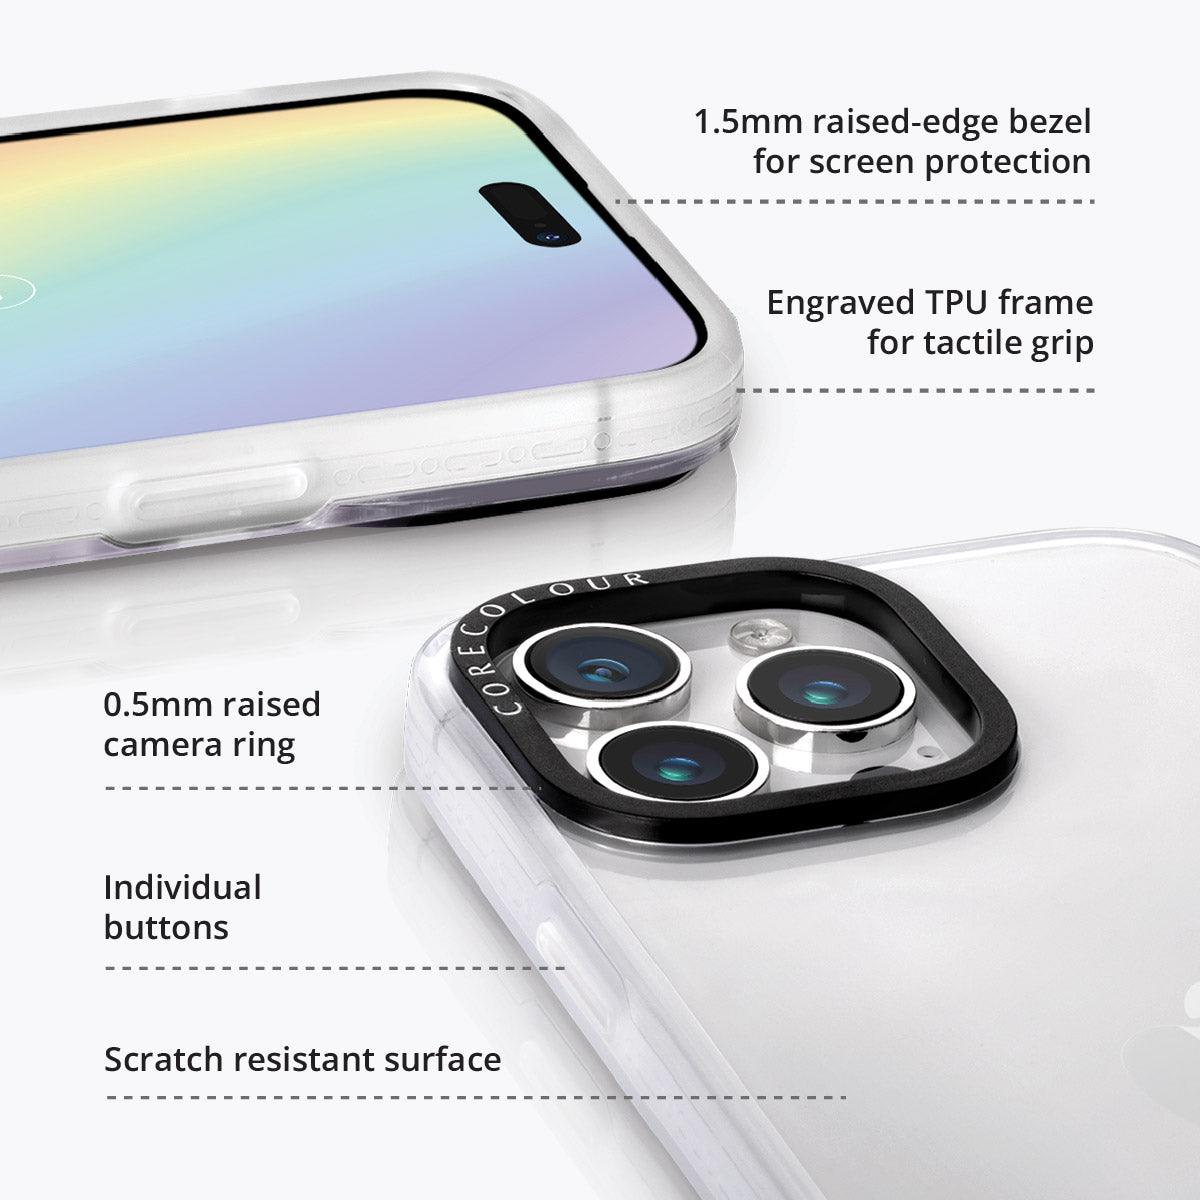 iPhone 14 Pro Max Coral Glow Phone Case - CORECOLOUR AU